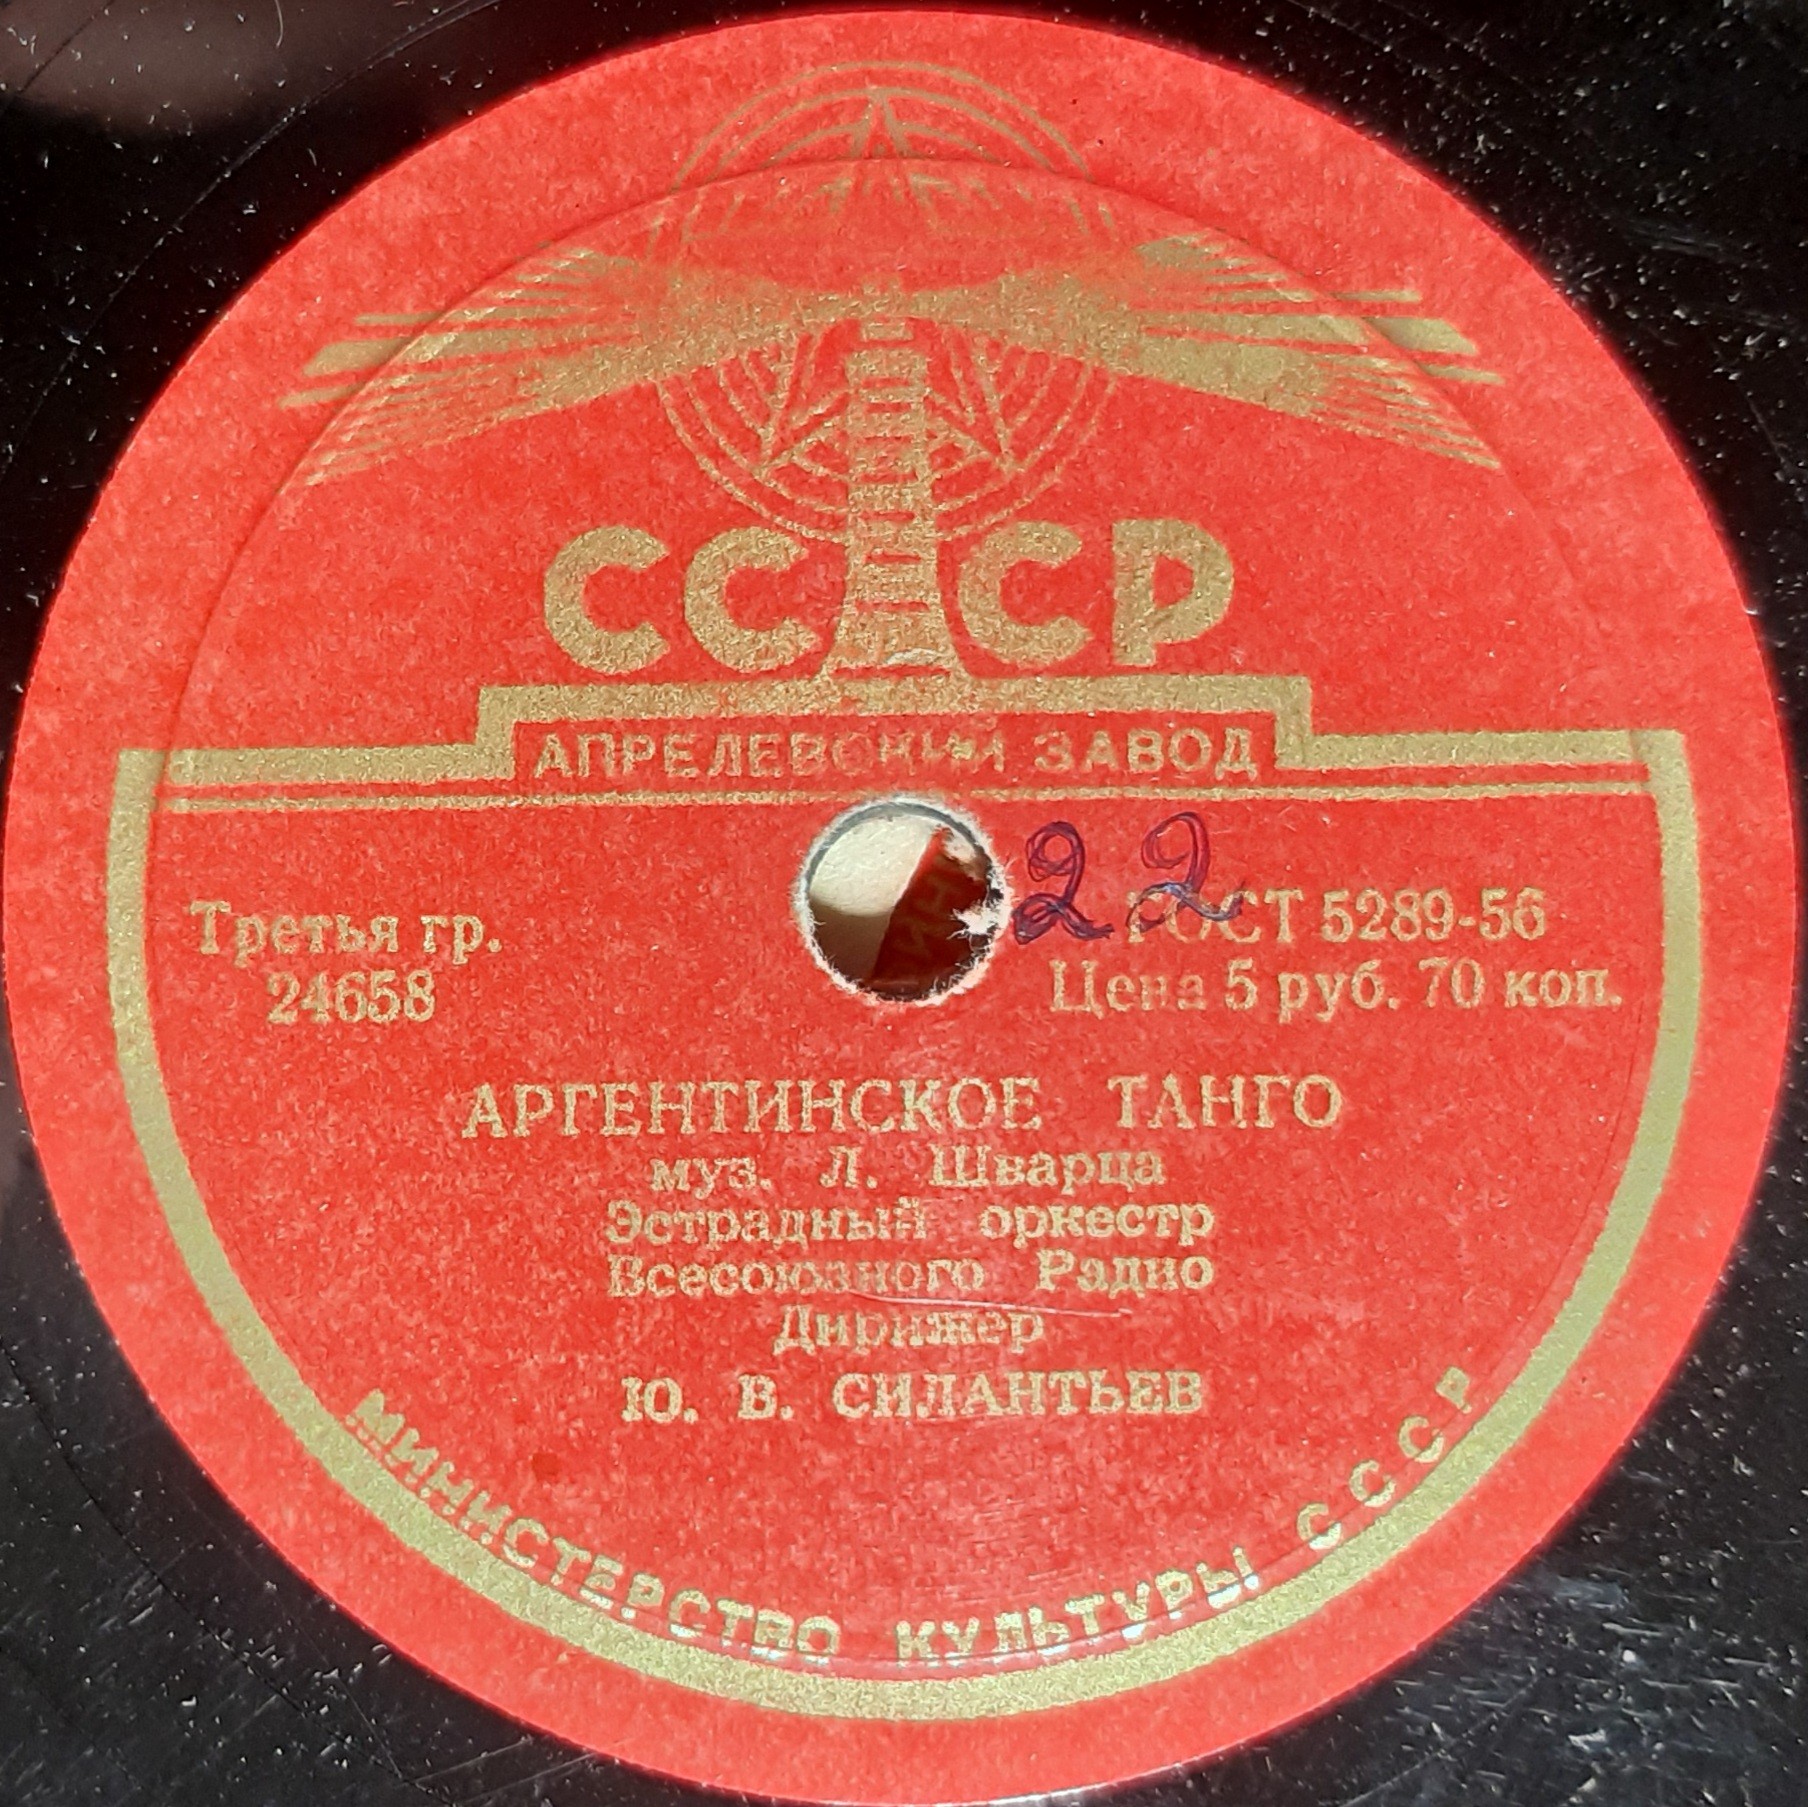 Эстрадный оркестр Всесоюзного Радио - Аргентинское танго / Медленный фокстрот